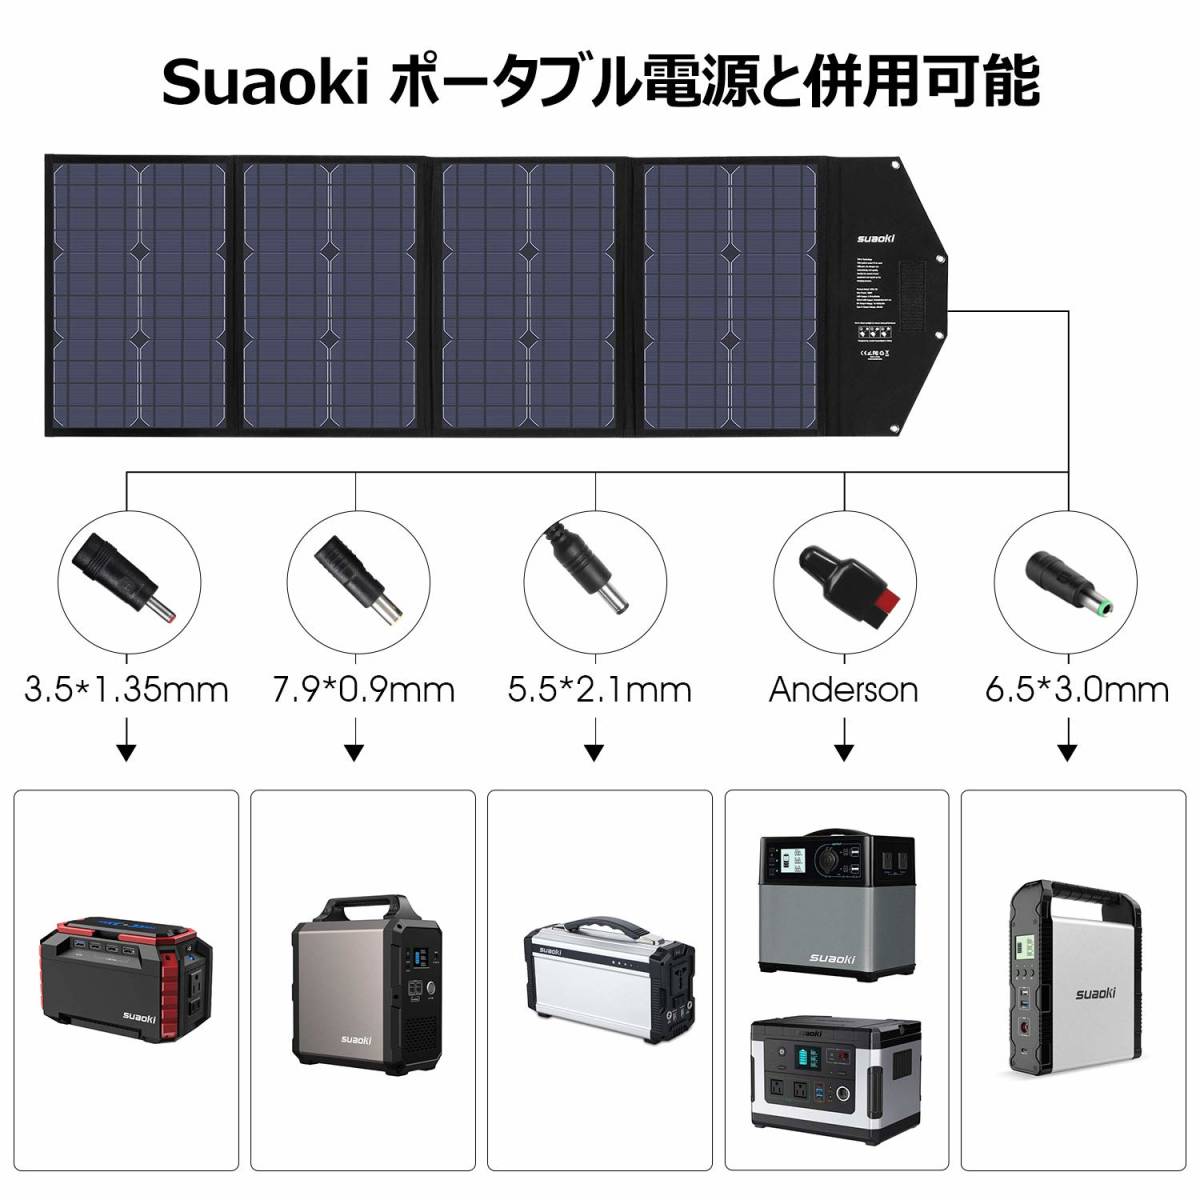 【新品に近い】suaoki ソーラーチャージャー 100W 折りたたみ式 自立スタンド付き 単結晶 ソーラーパネル PD60W QC3.0 ソーラー充電 スマホ_画像7